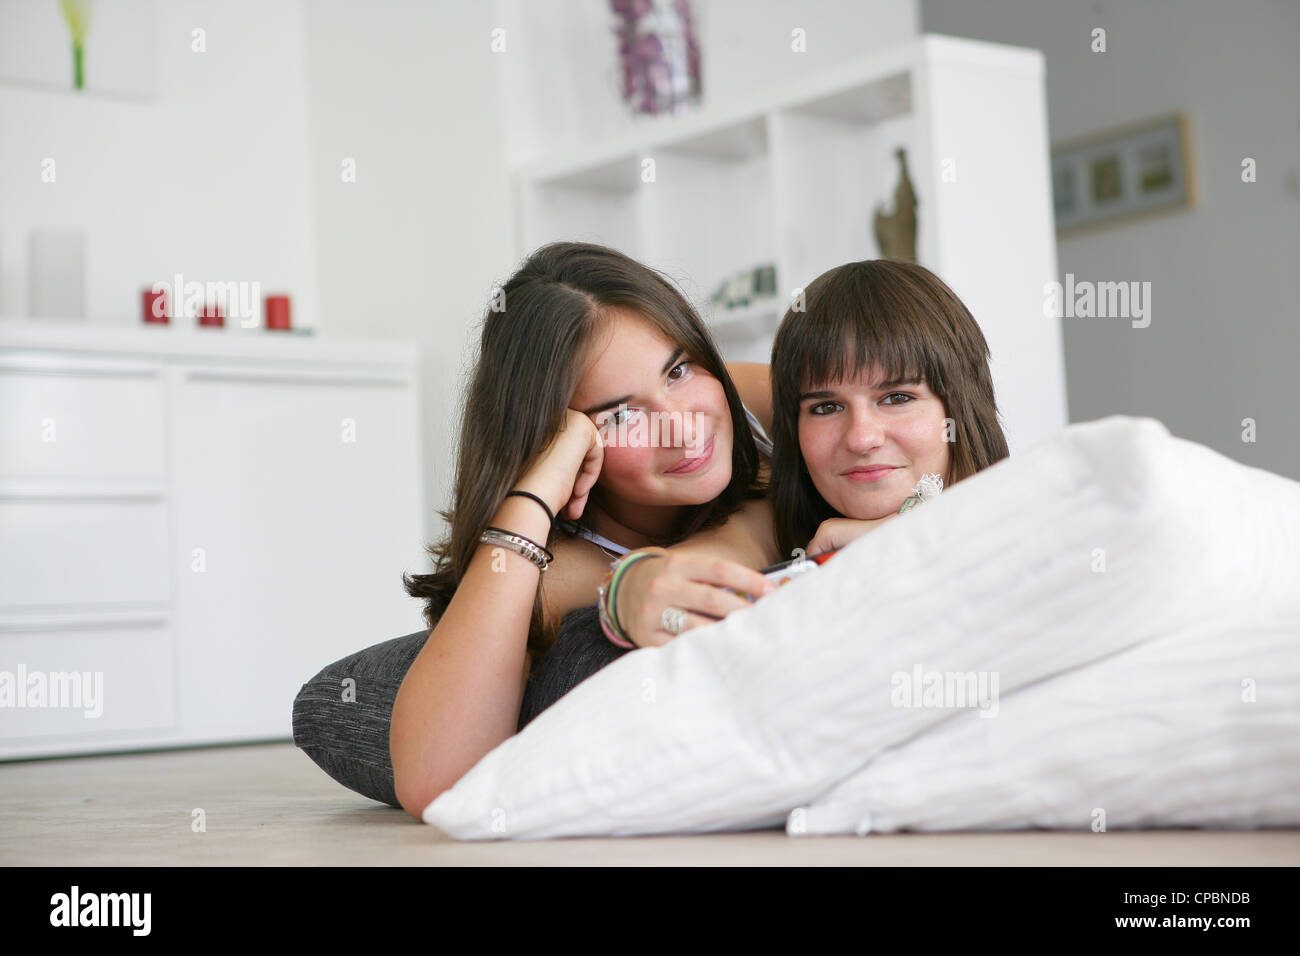 Los adolescentes apoyados sobre cojines Foto de stock